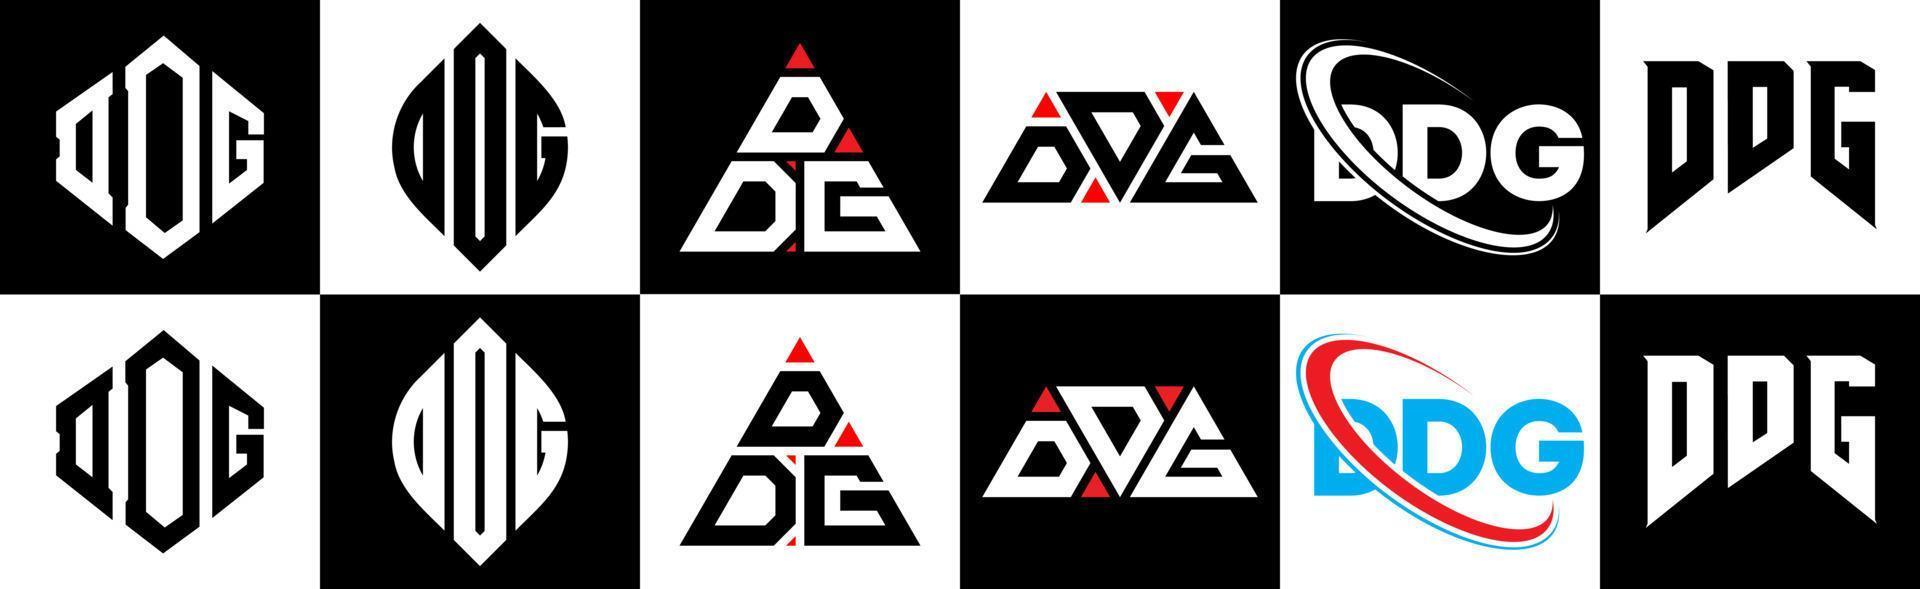 création de logo de lettre ddg en six styles. ddg polygone, cercle, triangle, hexagone, style plat et simple avec logo de lettre de variation de couleur noir et blanc dans un plan de travail. ddg logo minimaliste et classique vecteur